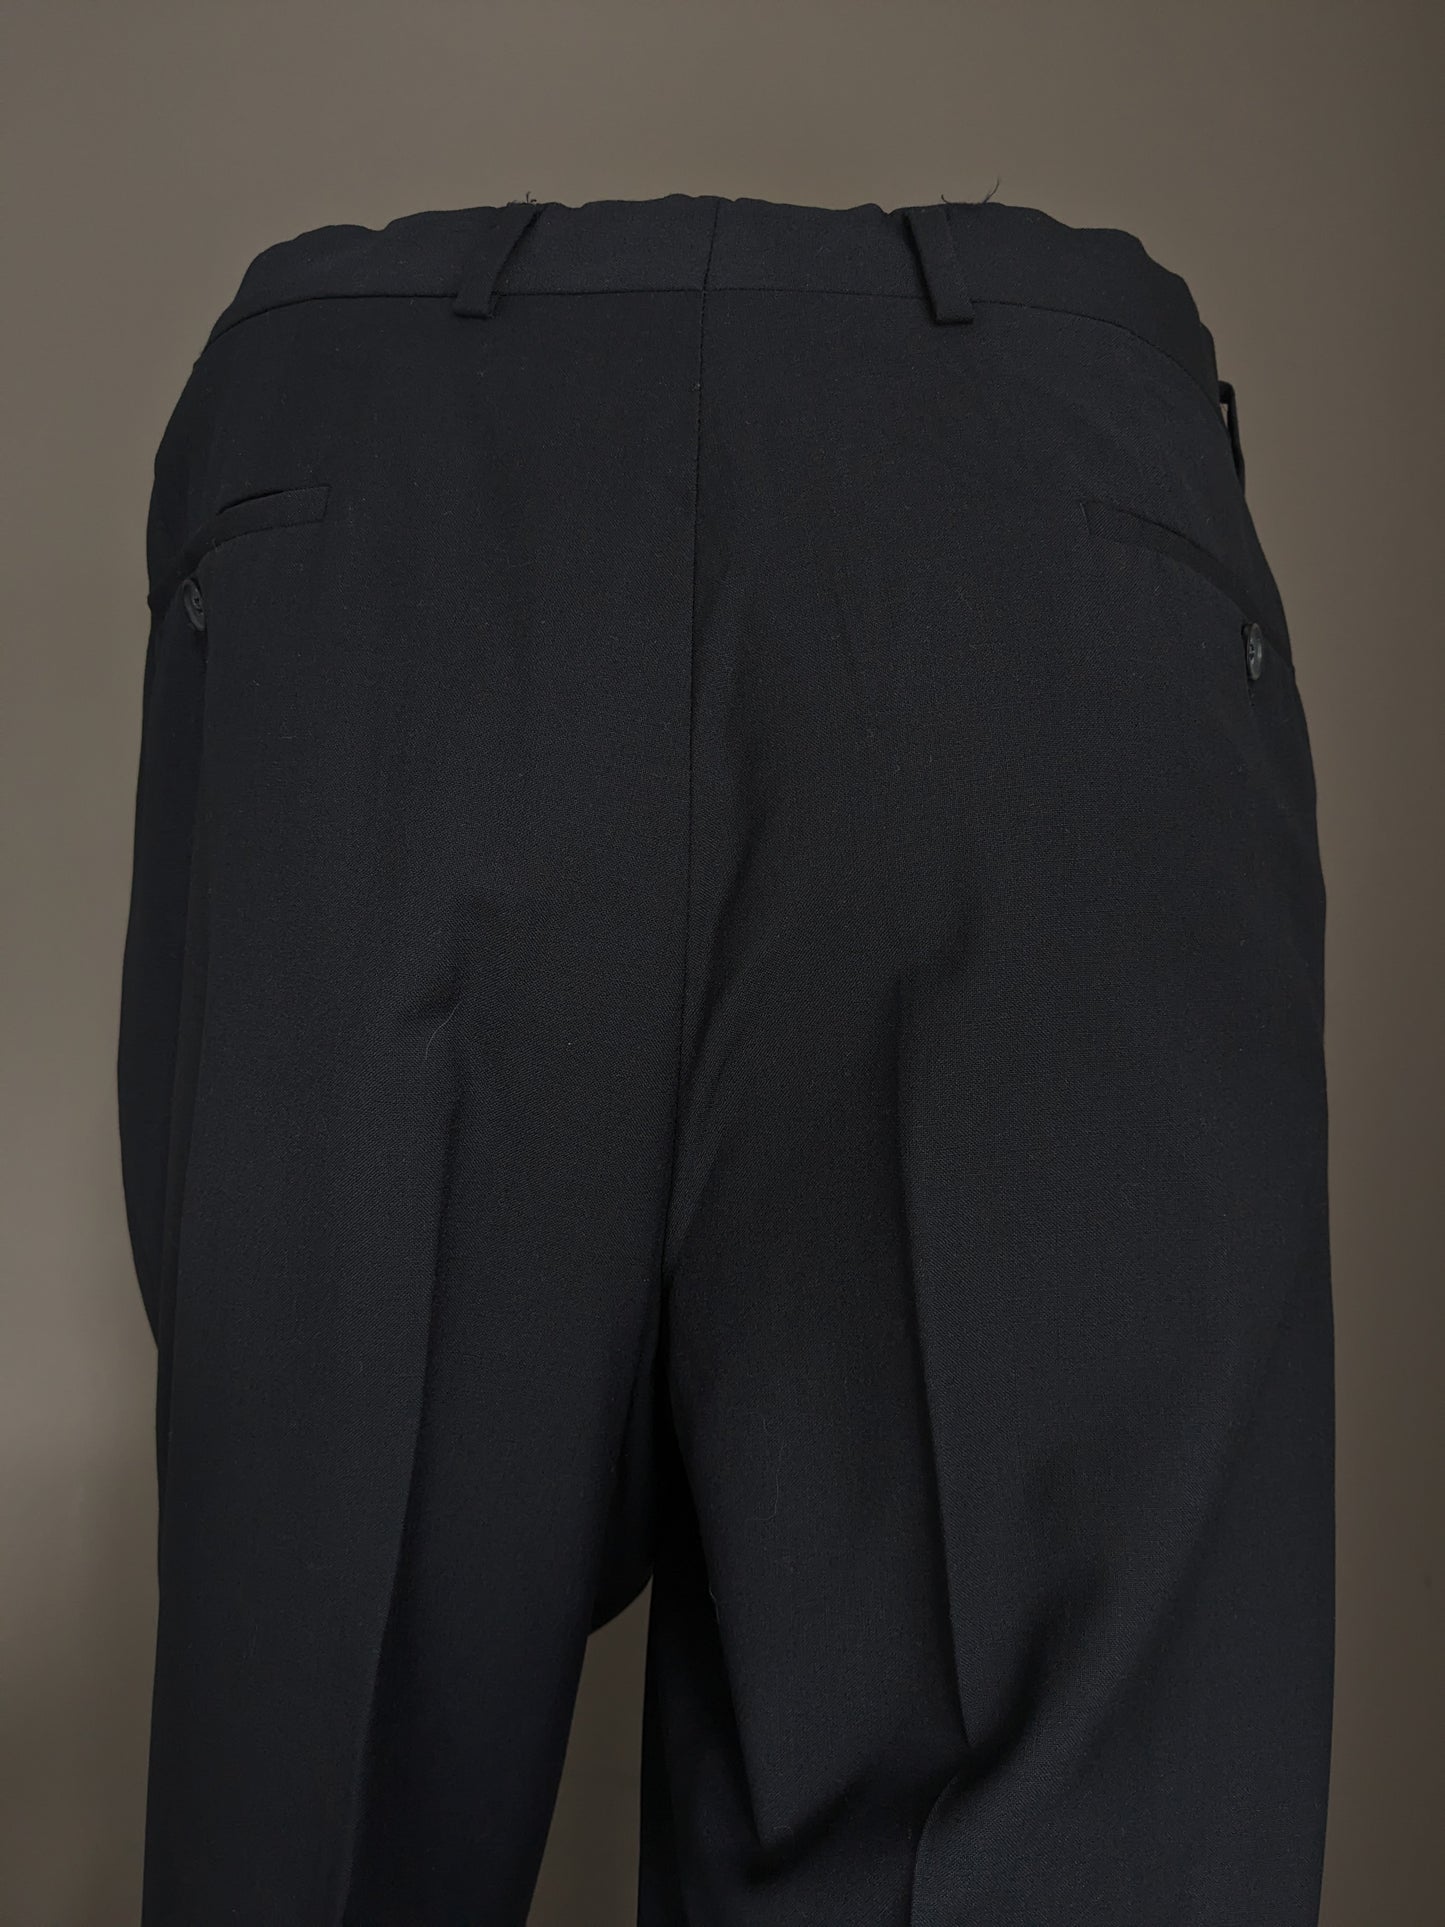 Pantaloni di lana con copertura. Colorato blu scuro. Taglia 52 / L. #500.